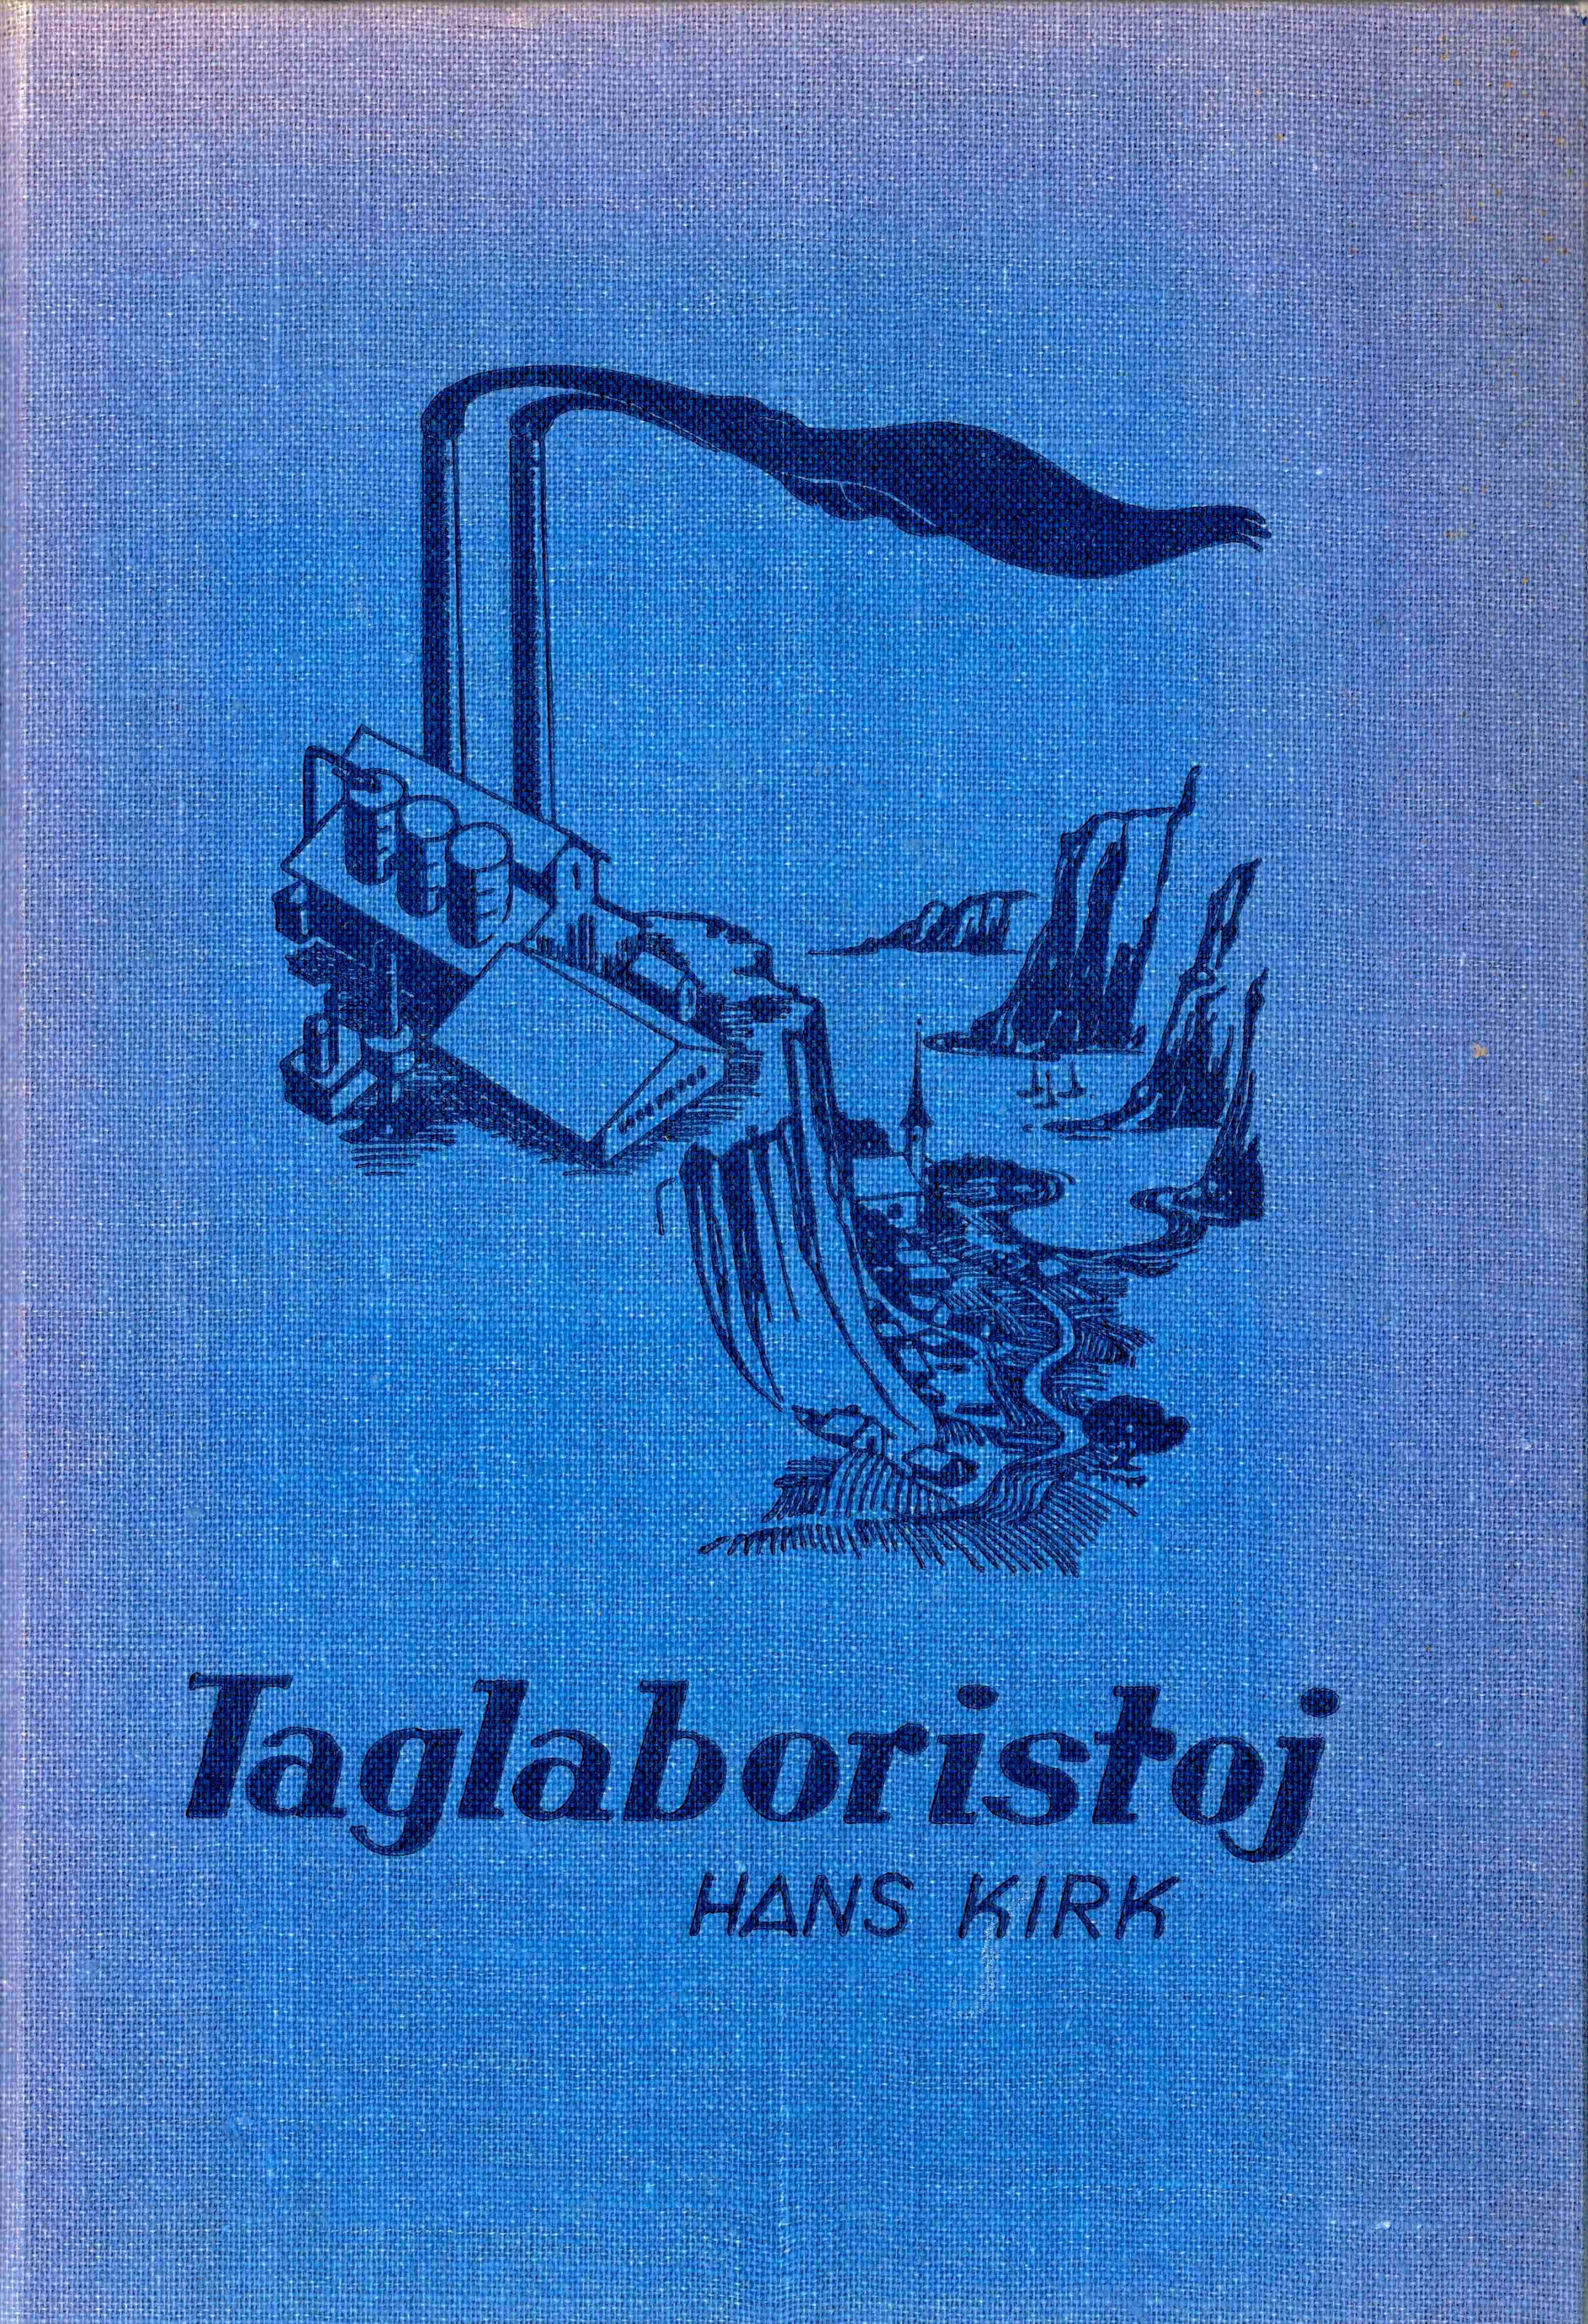 Taglaboristoj (Hardcover, esperanto language, 1967, Dansk Esperanto Forlag)